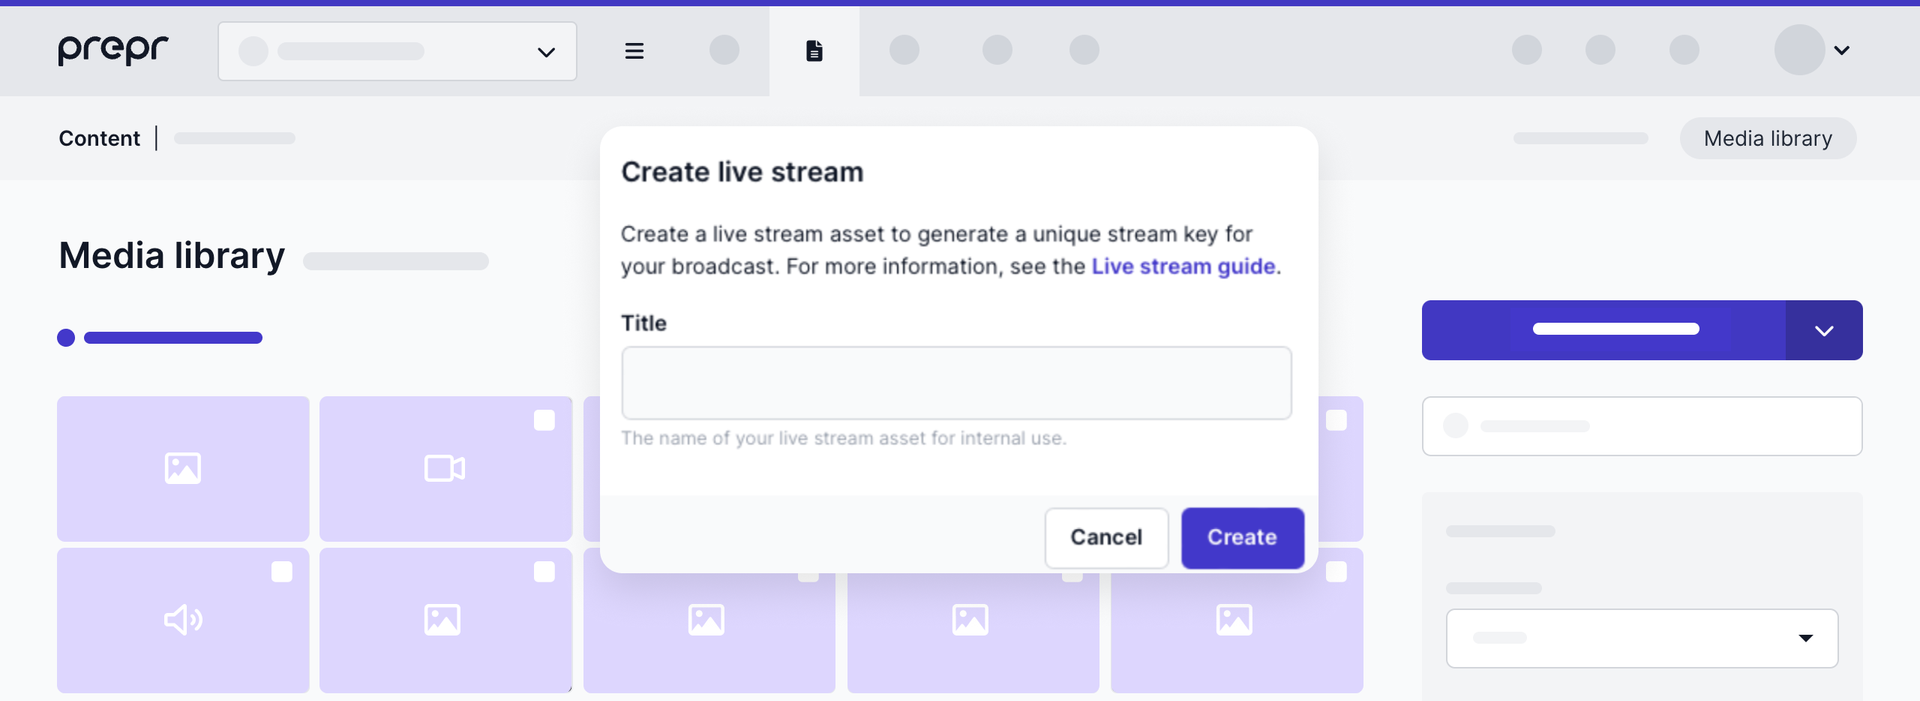 Confirm a live stream creation